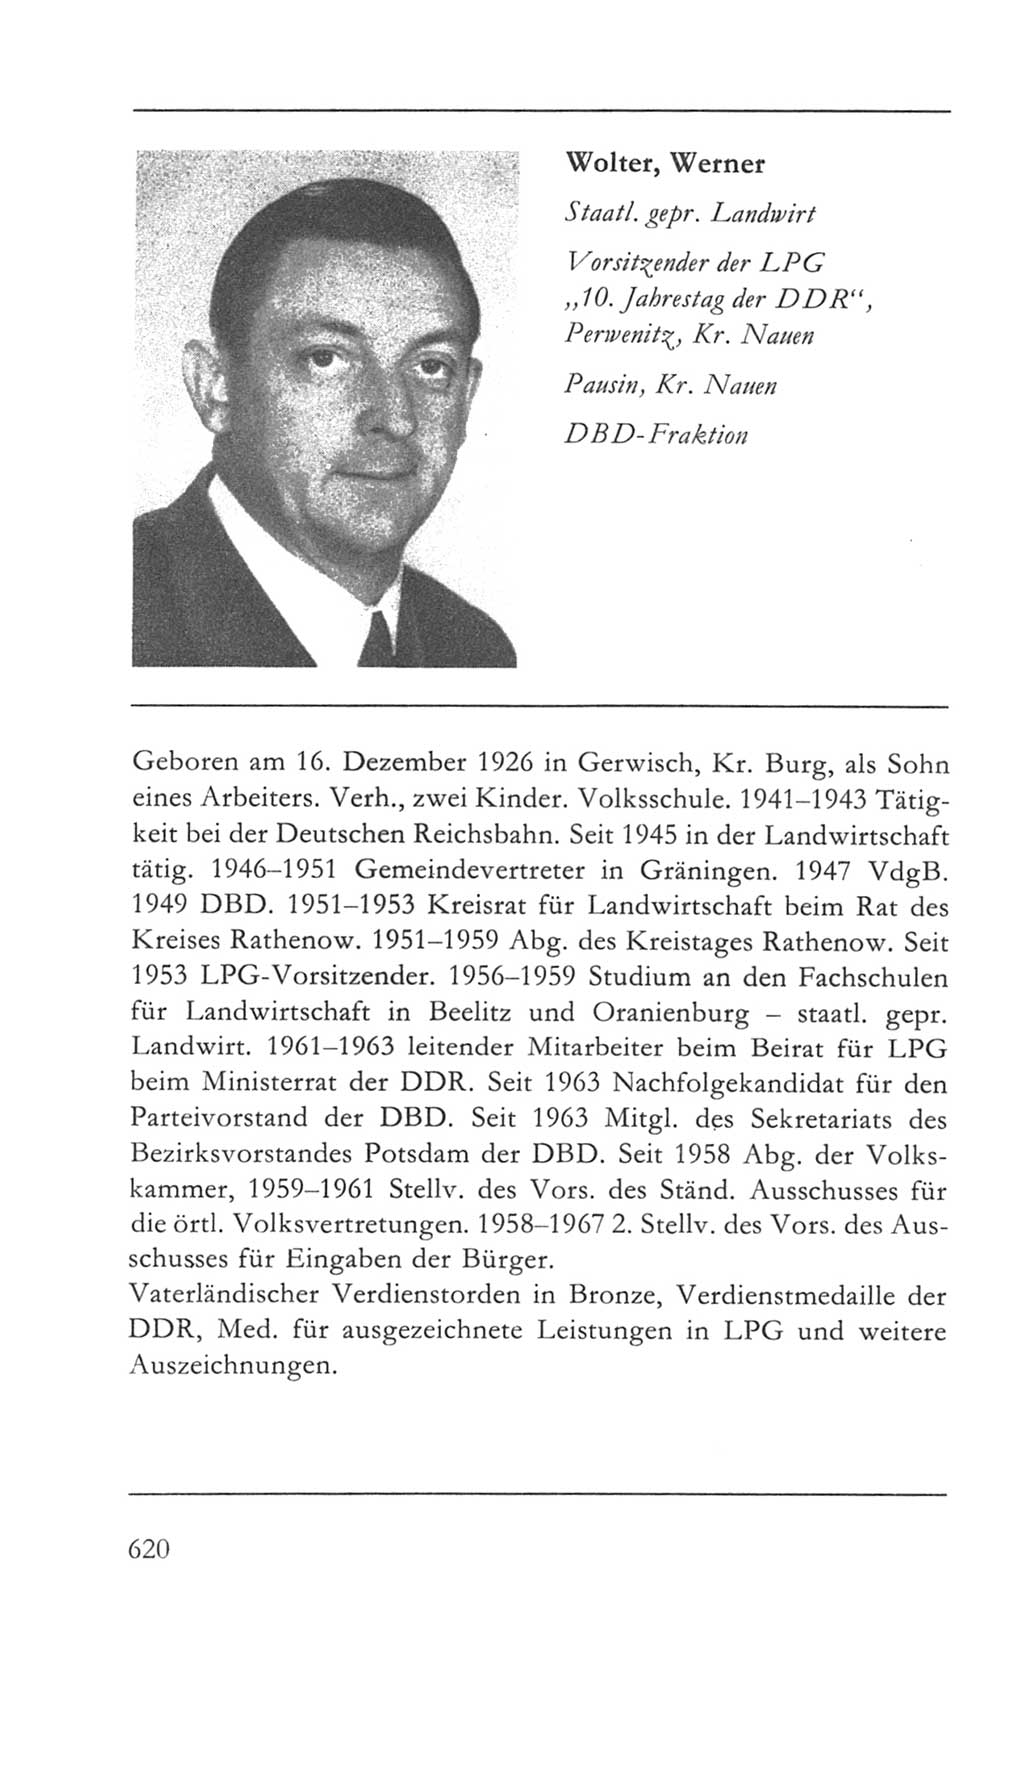 Volkskammer (VK) der Deutschen Demokratischen Republik (DDR) 5. Wahlperiode 1967-1971, Seite 620 (VK. DDR 5. WP. 1967-1971, S. 620)